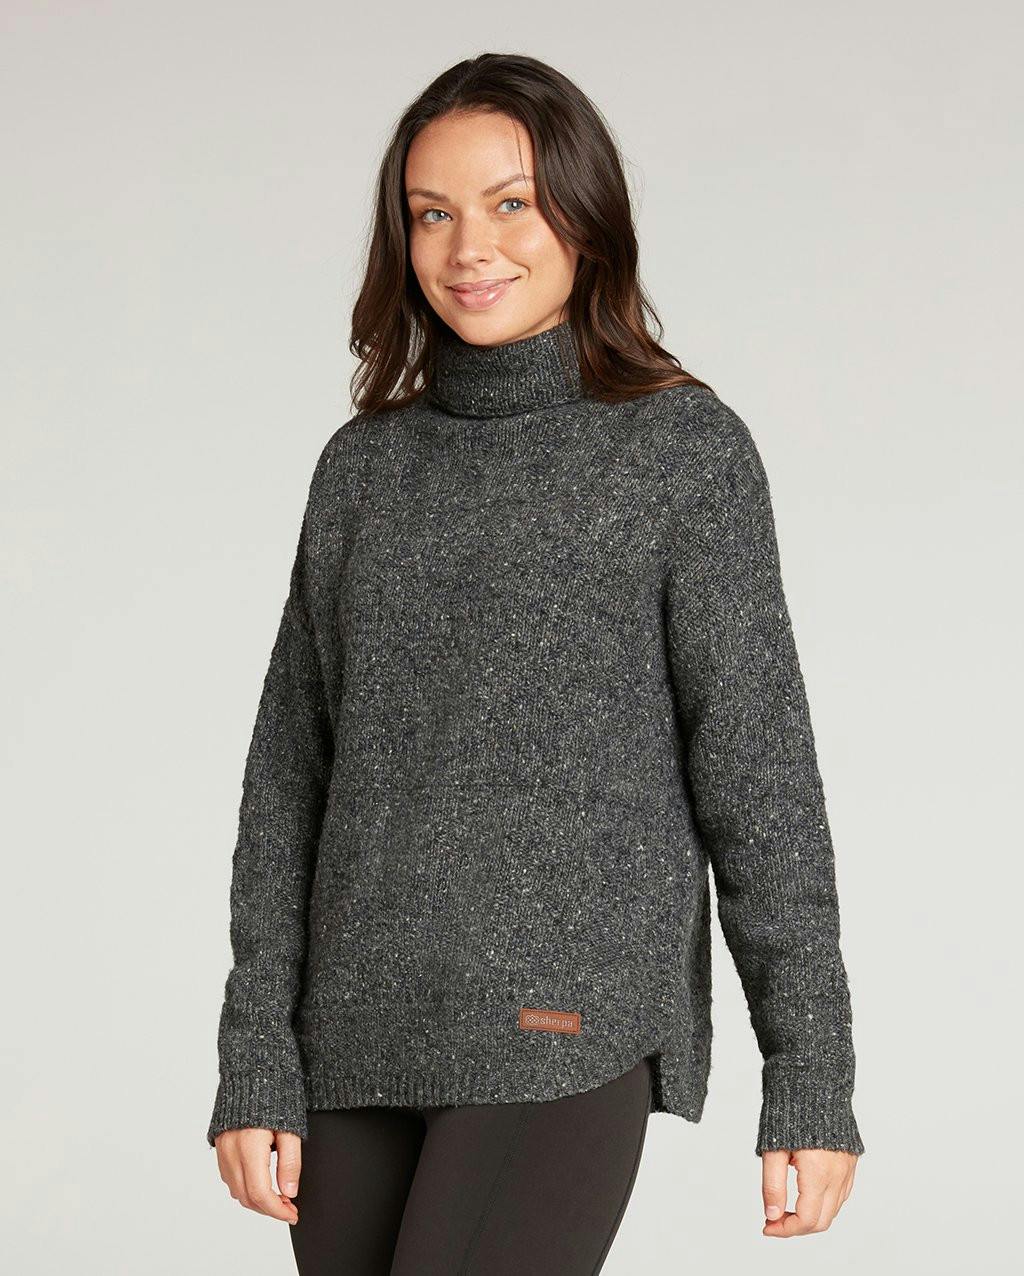 Sherpa Adventure Gear - Women's Yuden Pullover Sweater